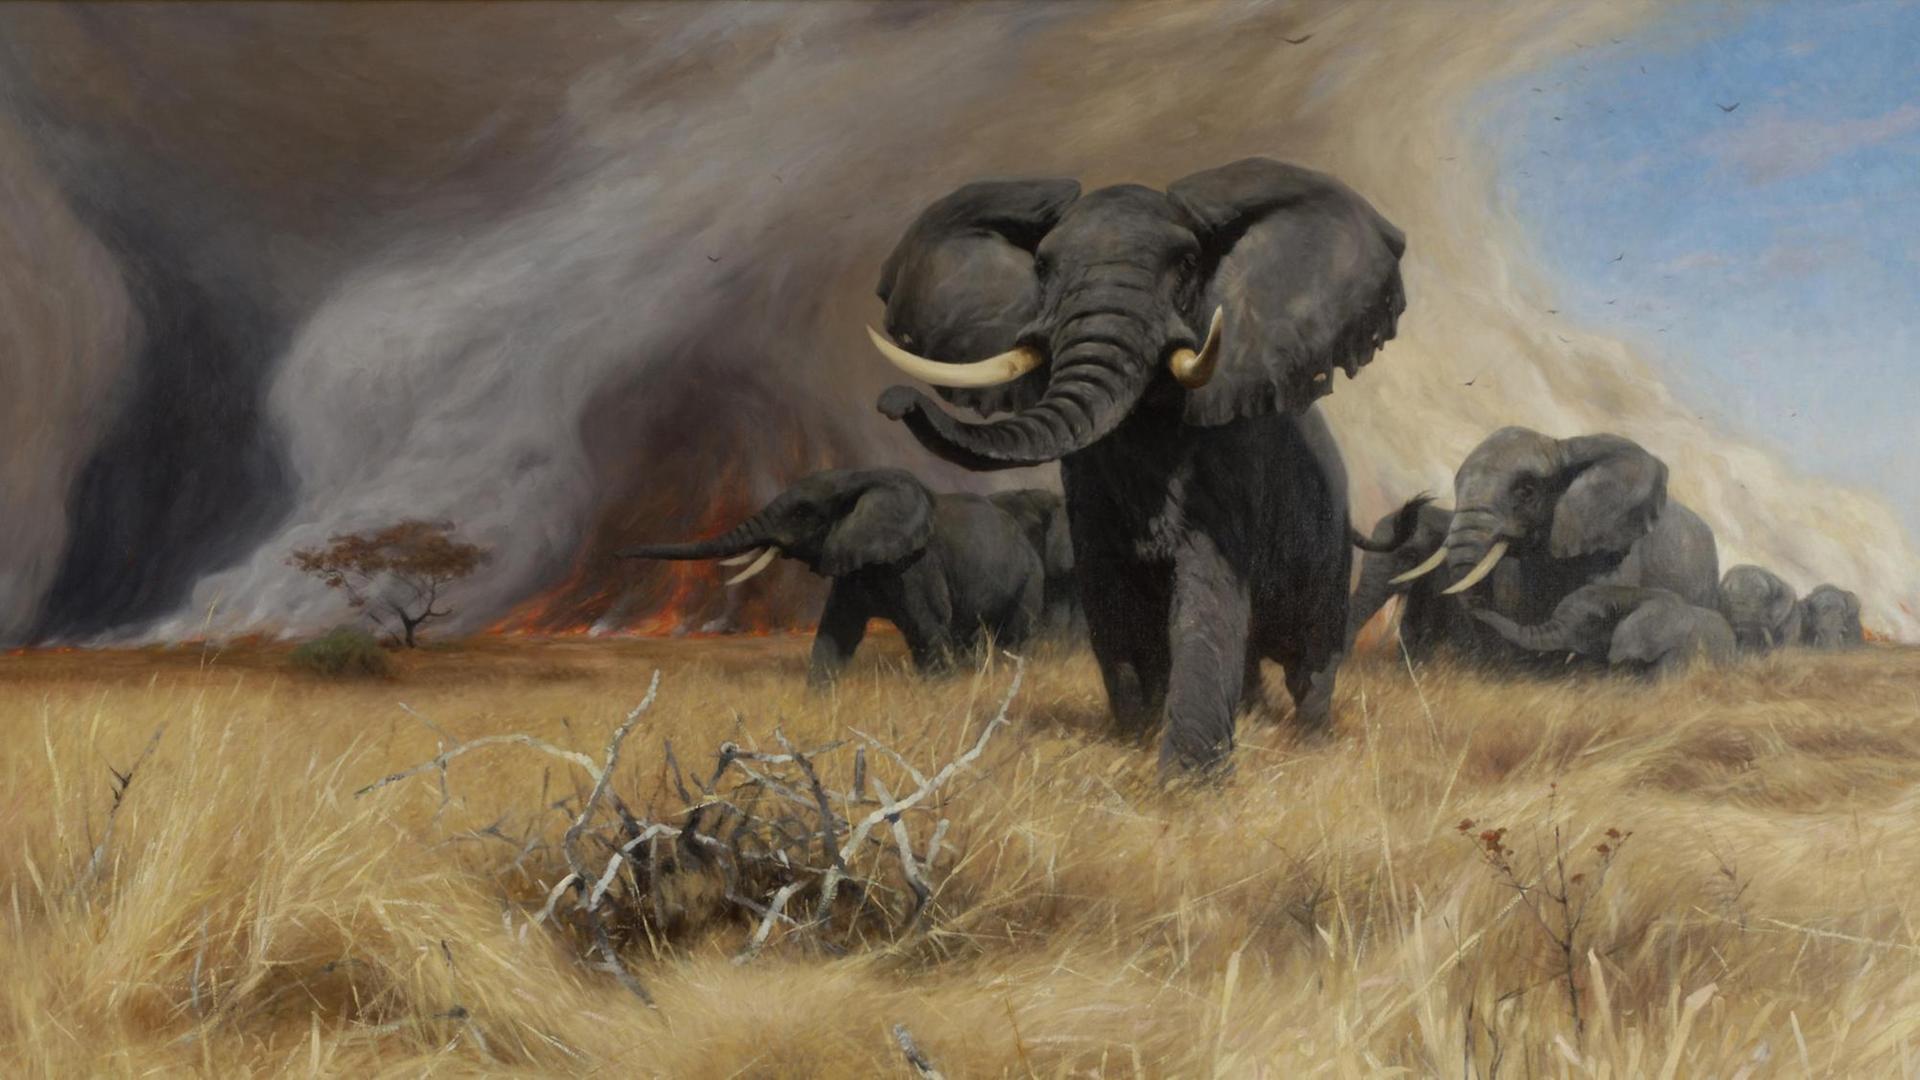 Ein Ölgemälde zeigt mehrere Elefanten in der afrikanischen Landschaft.